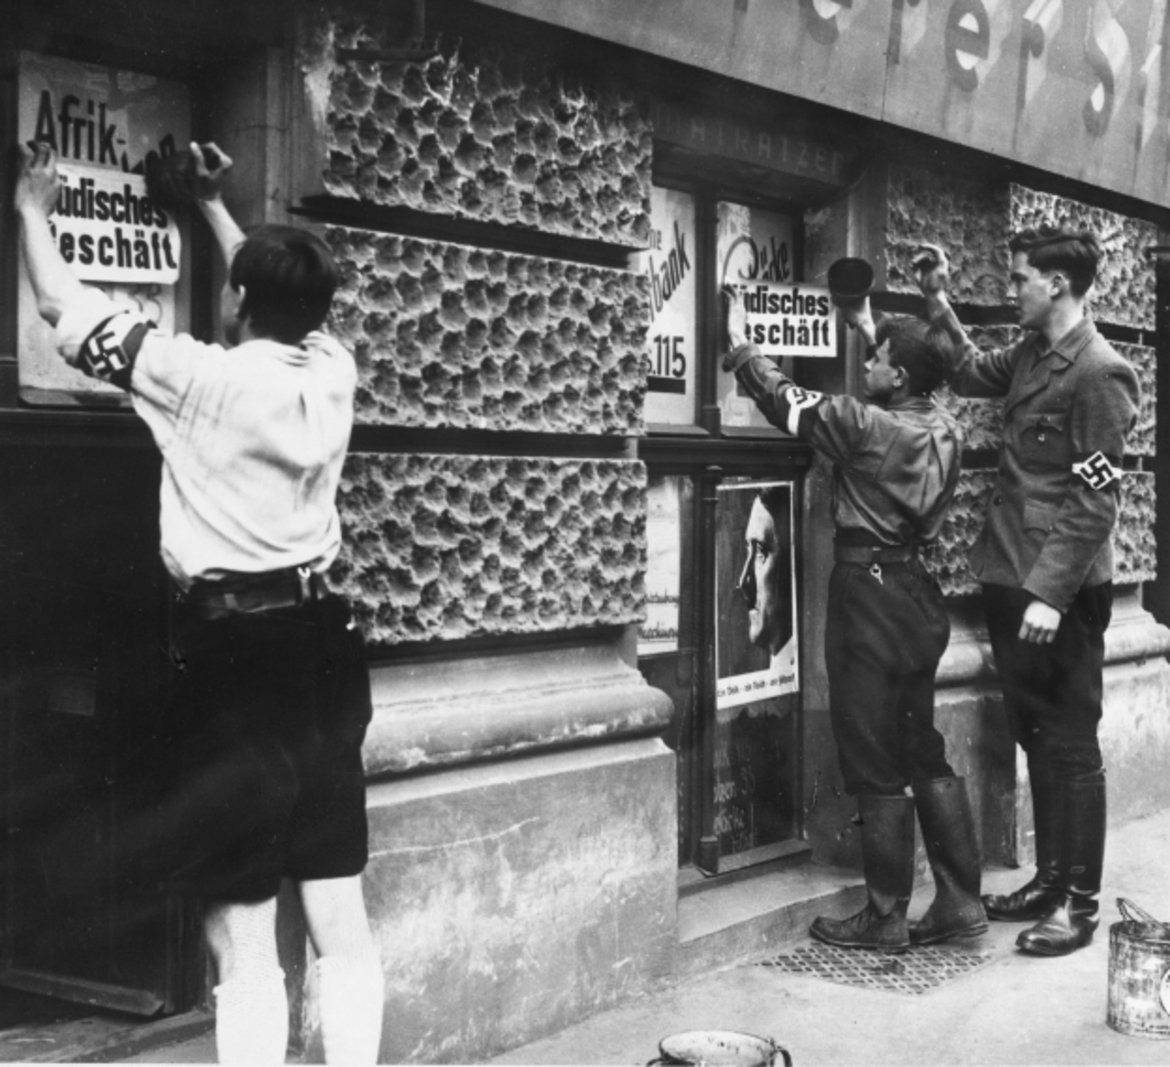 Buben, die offenbar Mittglieder der Hitler-Jugend sind, plakatieren Zetteln mit der Aufschrift "Jüdisches Geschäft" an Schaufenstern.